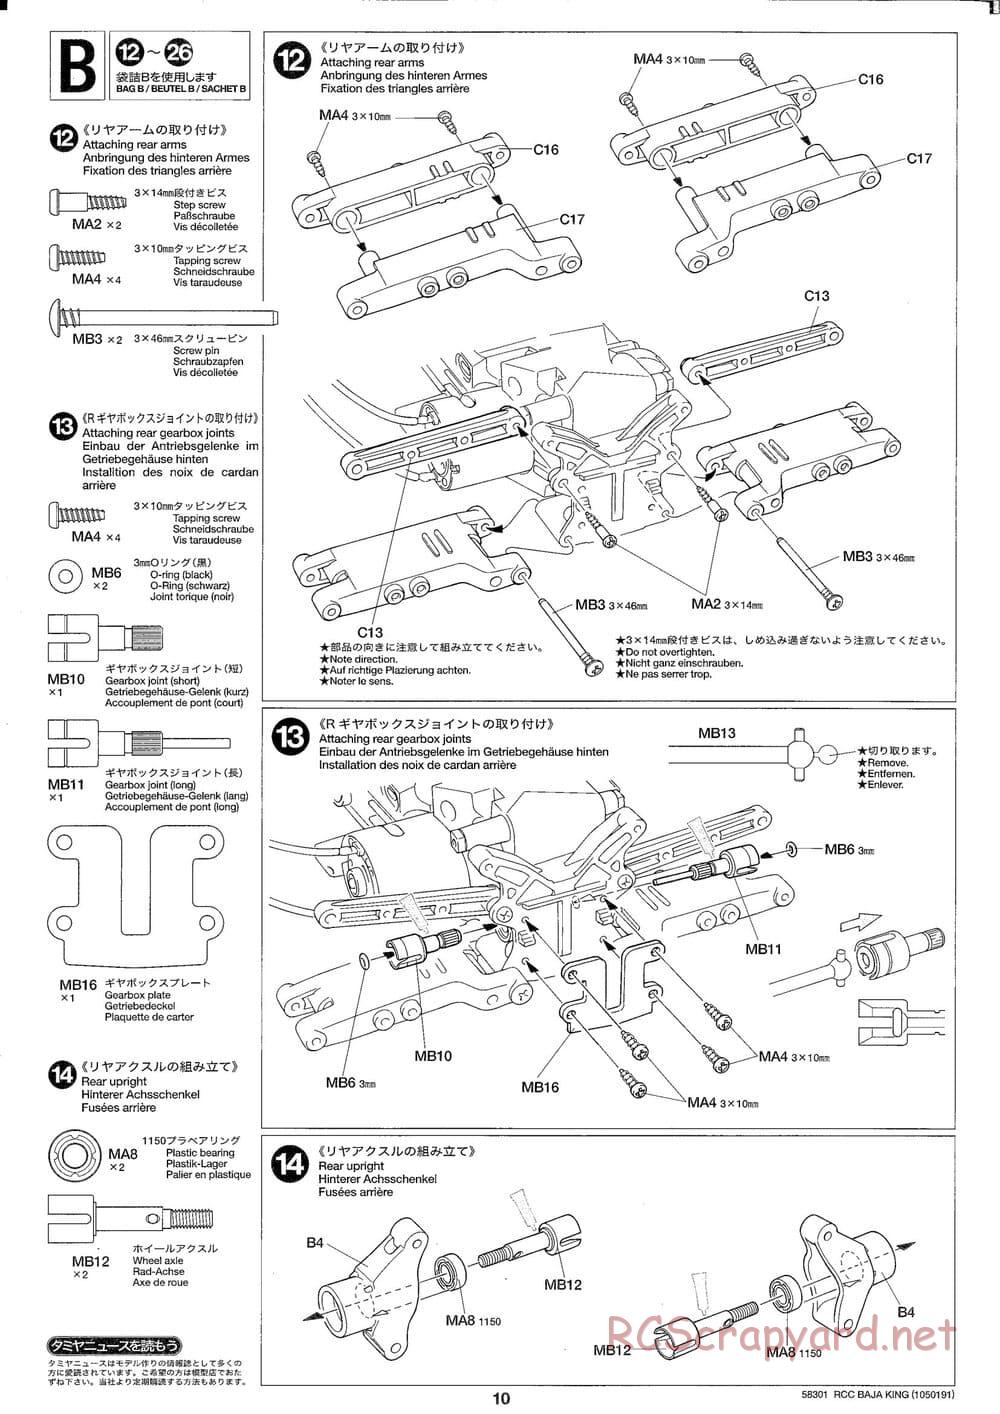 Tamiya - Baja King - TL-01B Chassis - Manual - Page 10